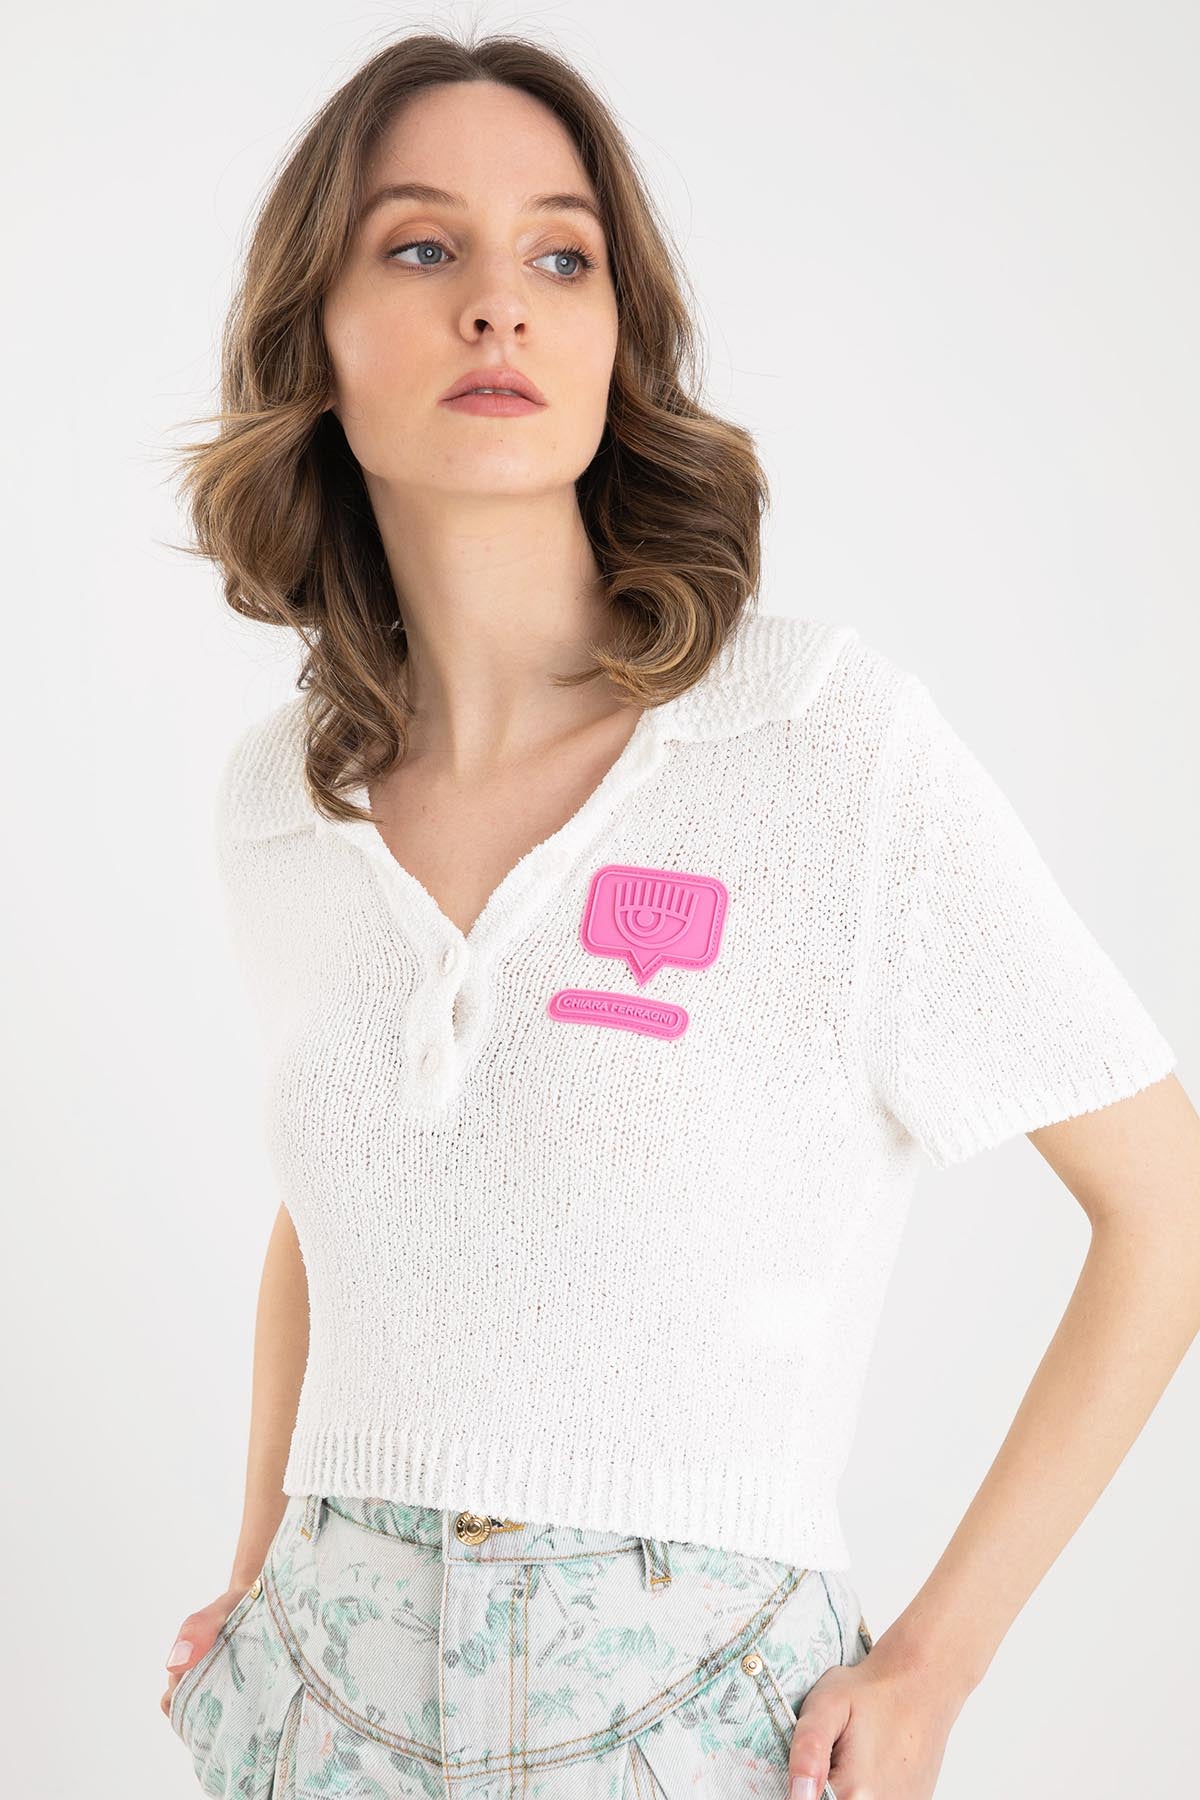 Chiara Ferragni Polo Yaka Triko T-shirt-Libas Trendy Fashion Store